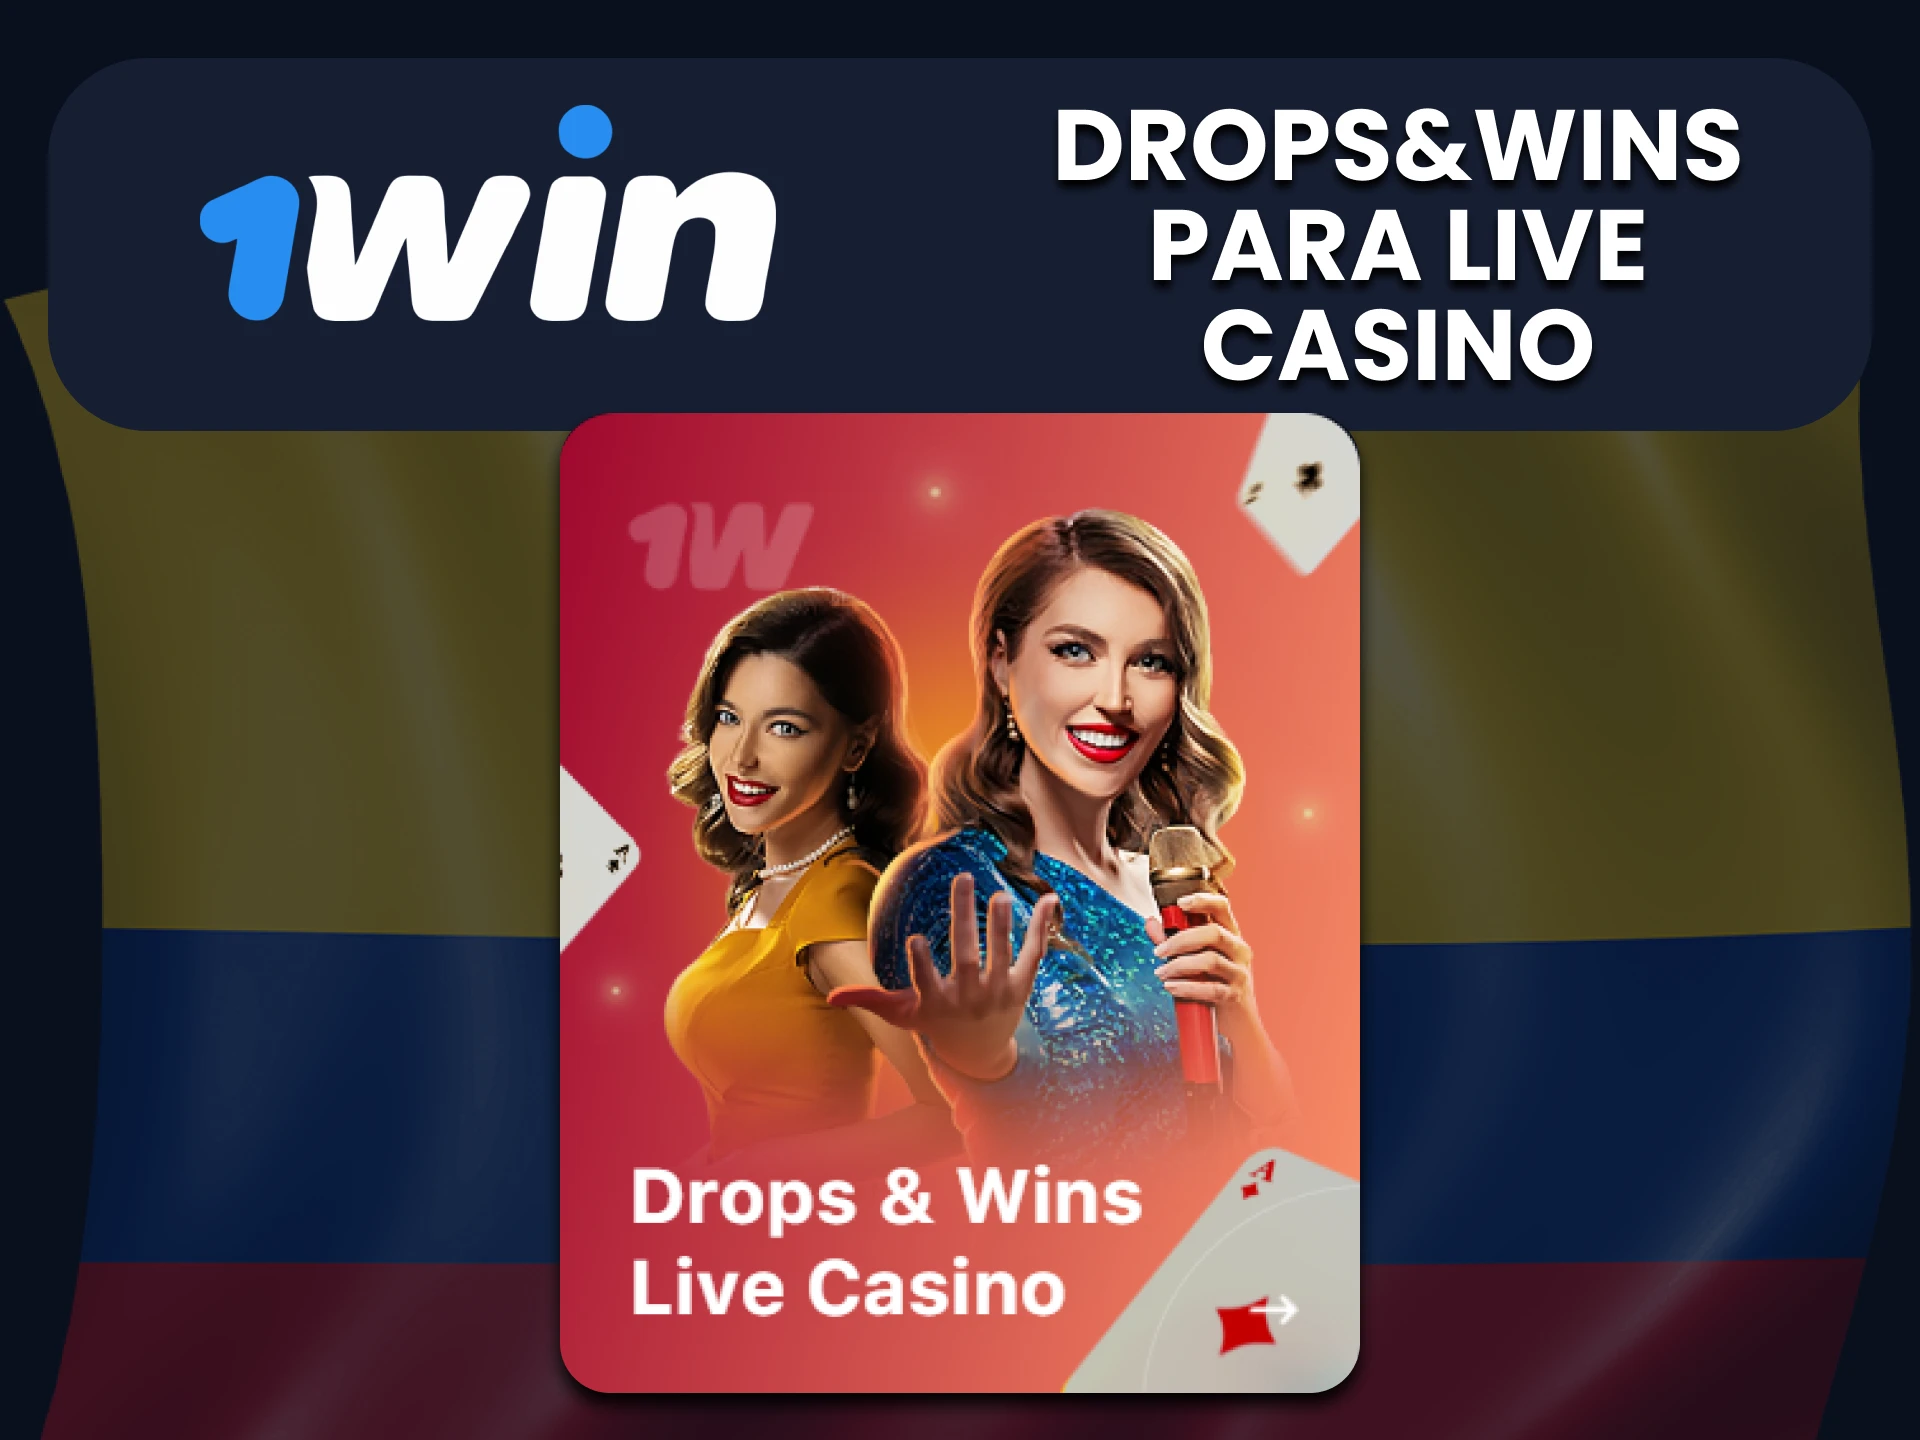 1win ofrece un bono para juegos de casino en vivo.